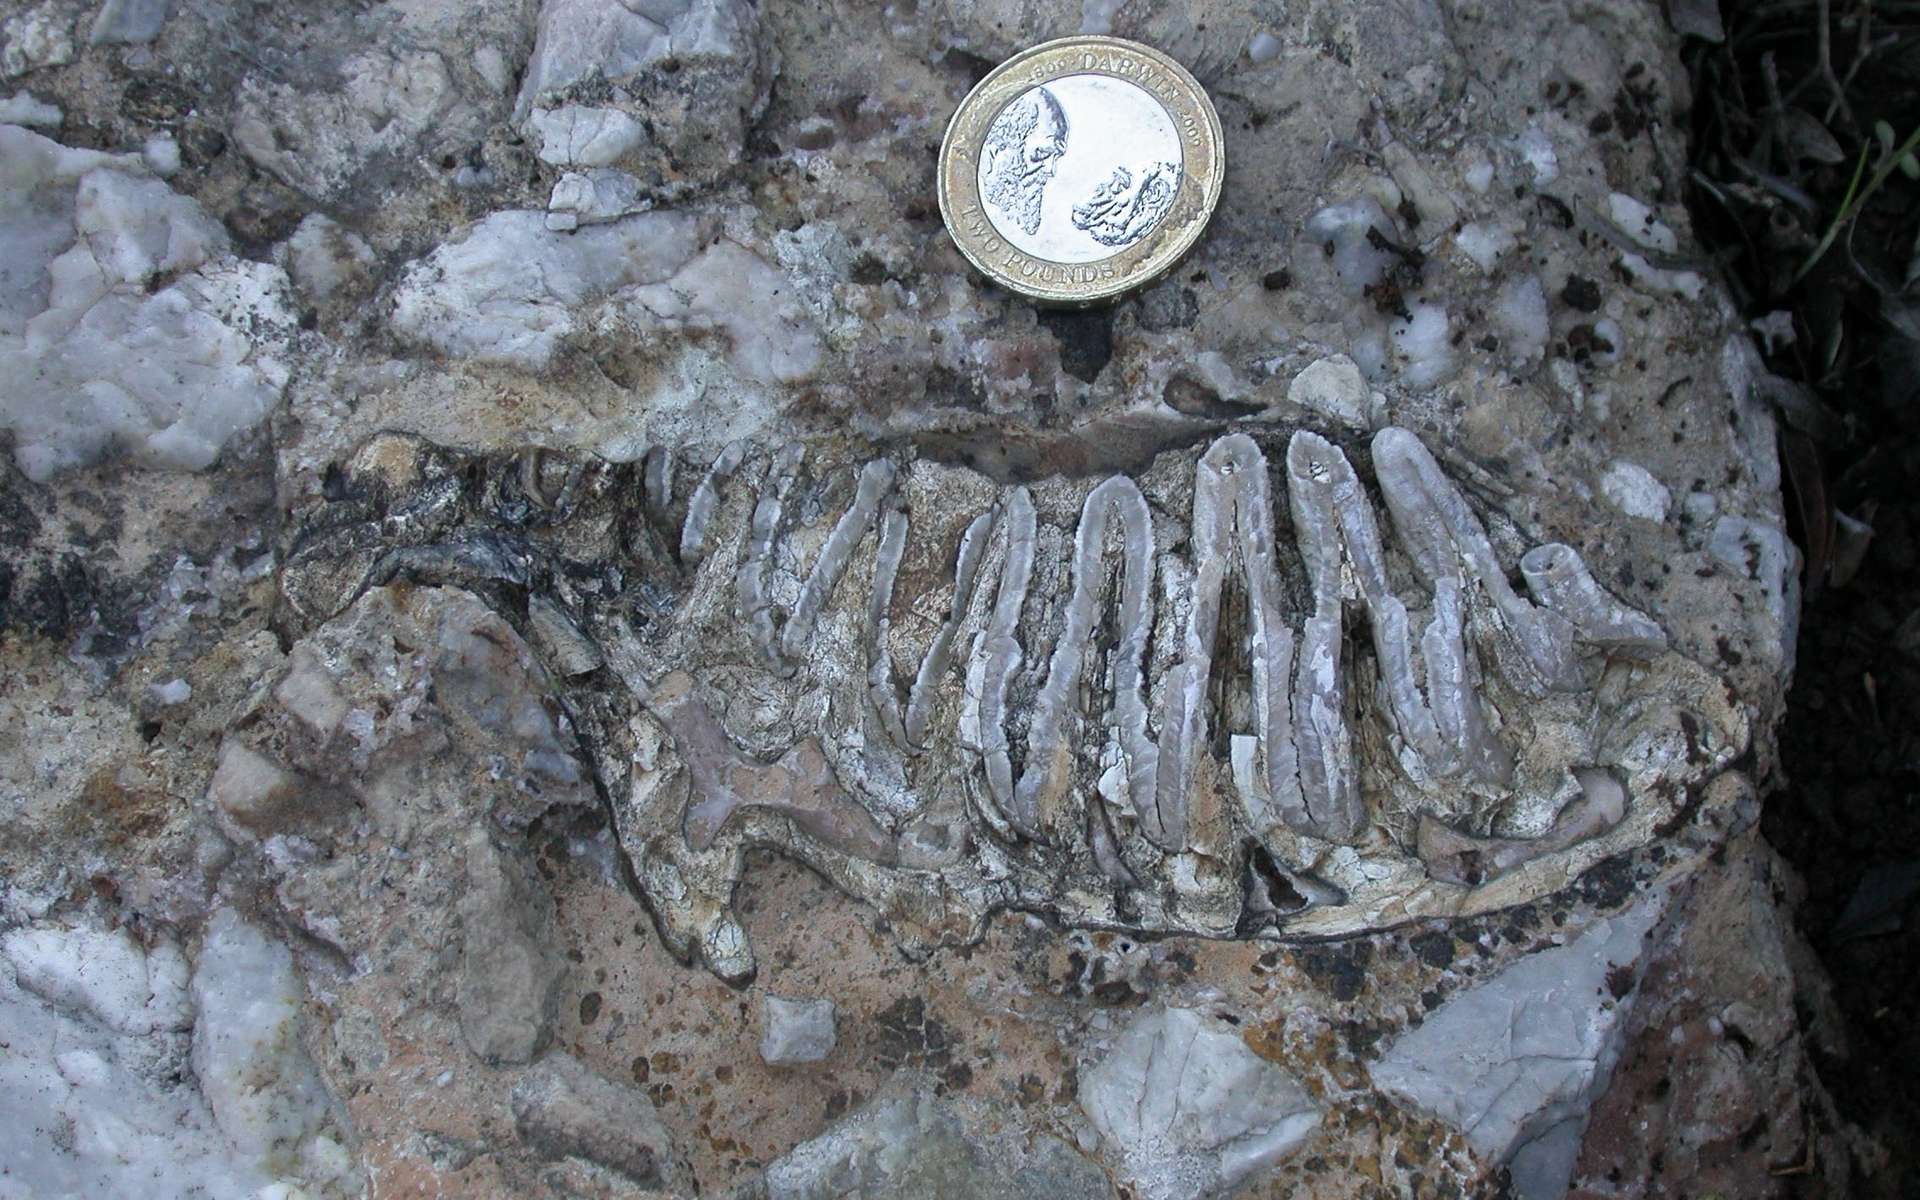 Photographie prise lors de la découverte d'une dent de mammouth nain en Crète. Elle reposait dans une couche de roche sédimentaire. Les ronds d'émail, i.e. les motifs visibles, ont été utilisés comme critère de détermination de l'espèce de son propriétaire. © Victoria Herridge